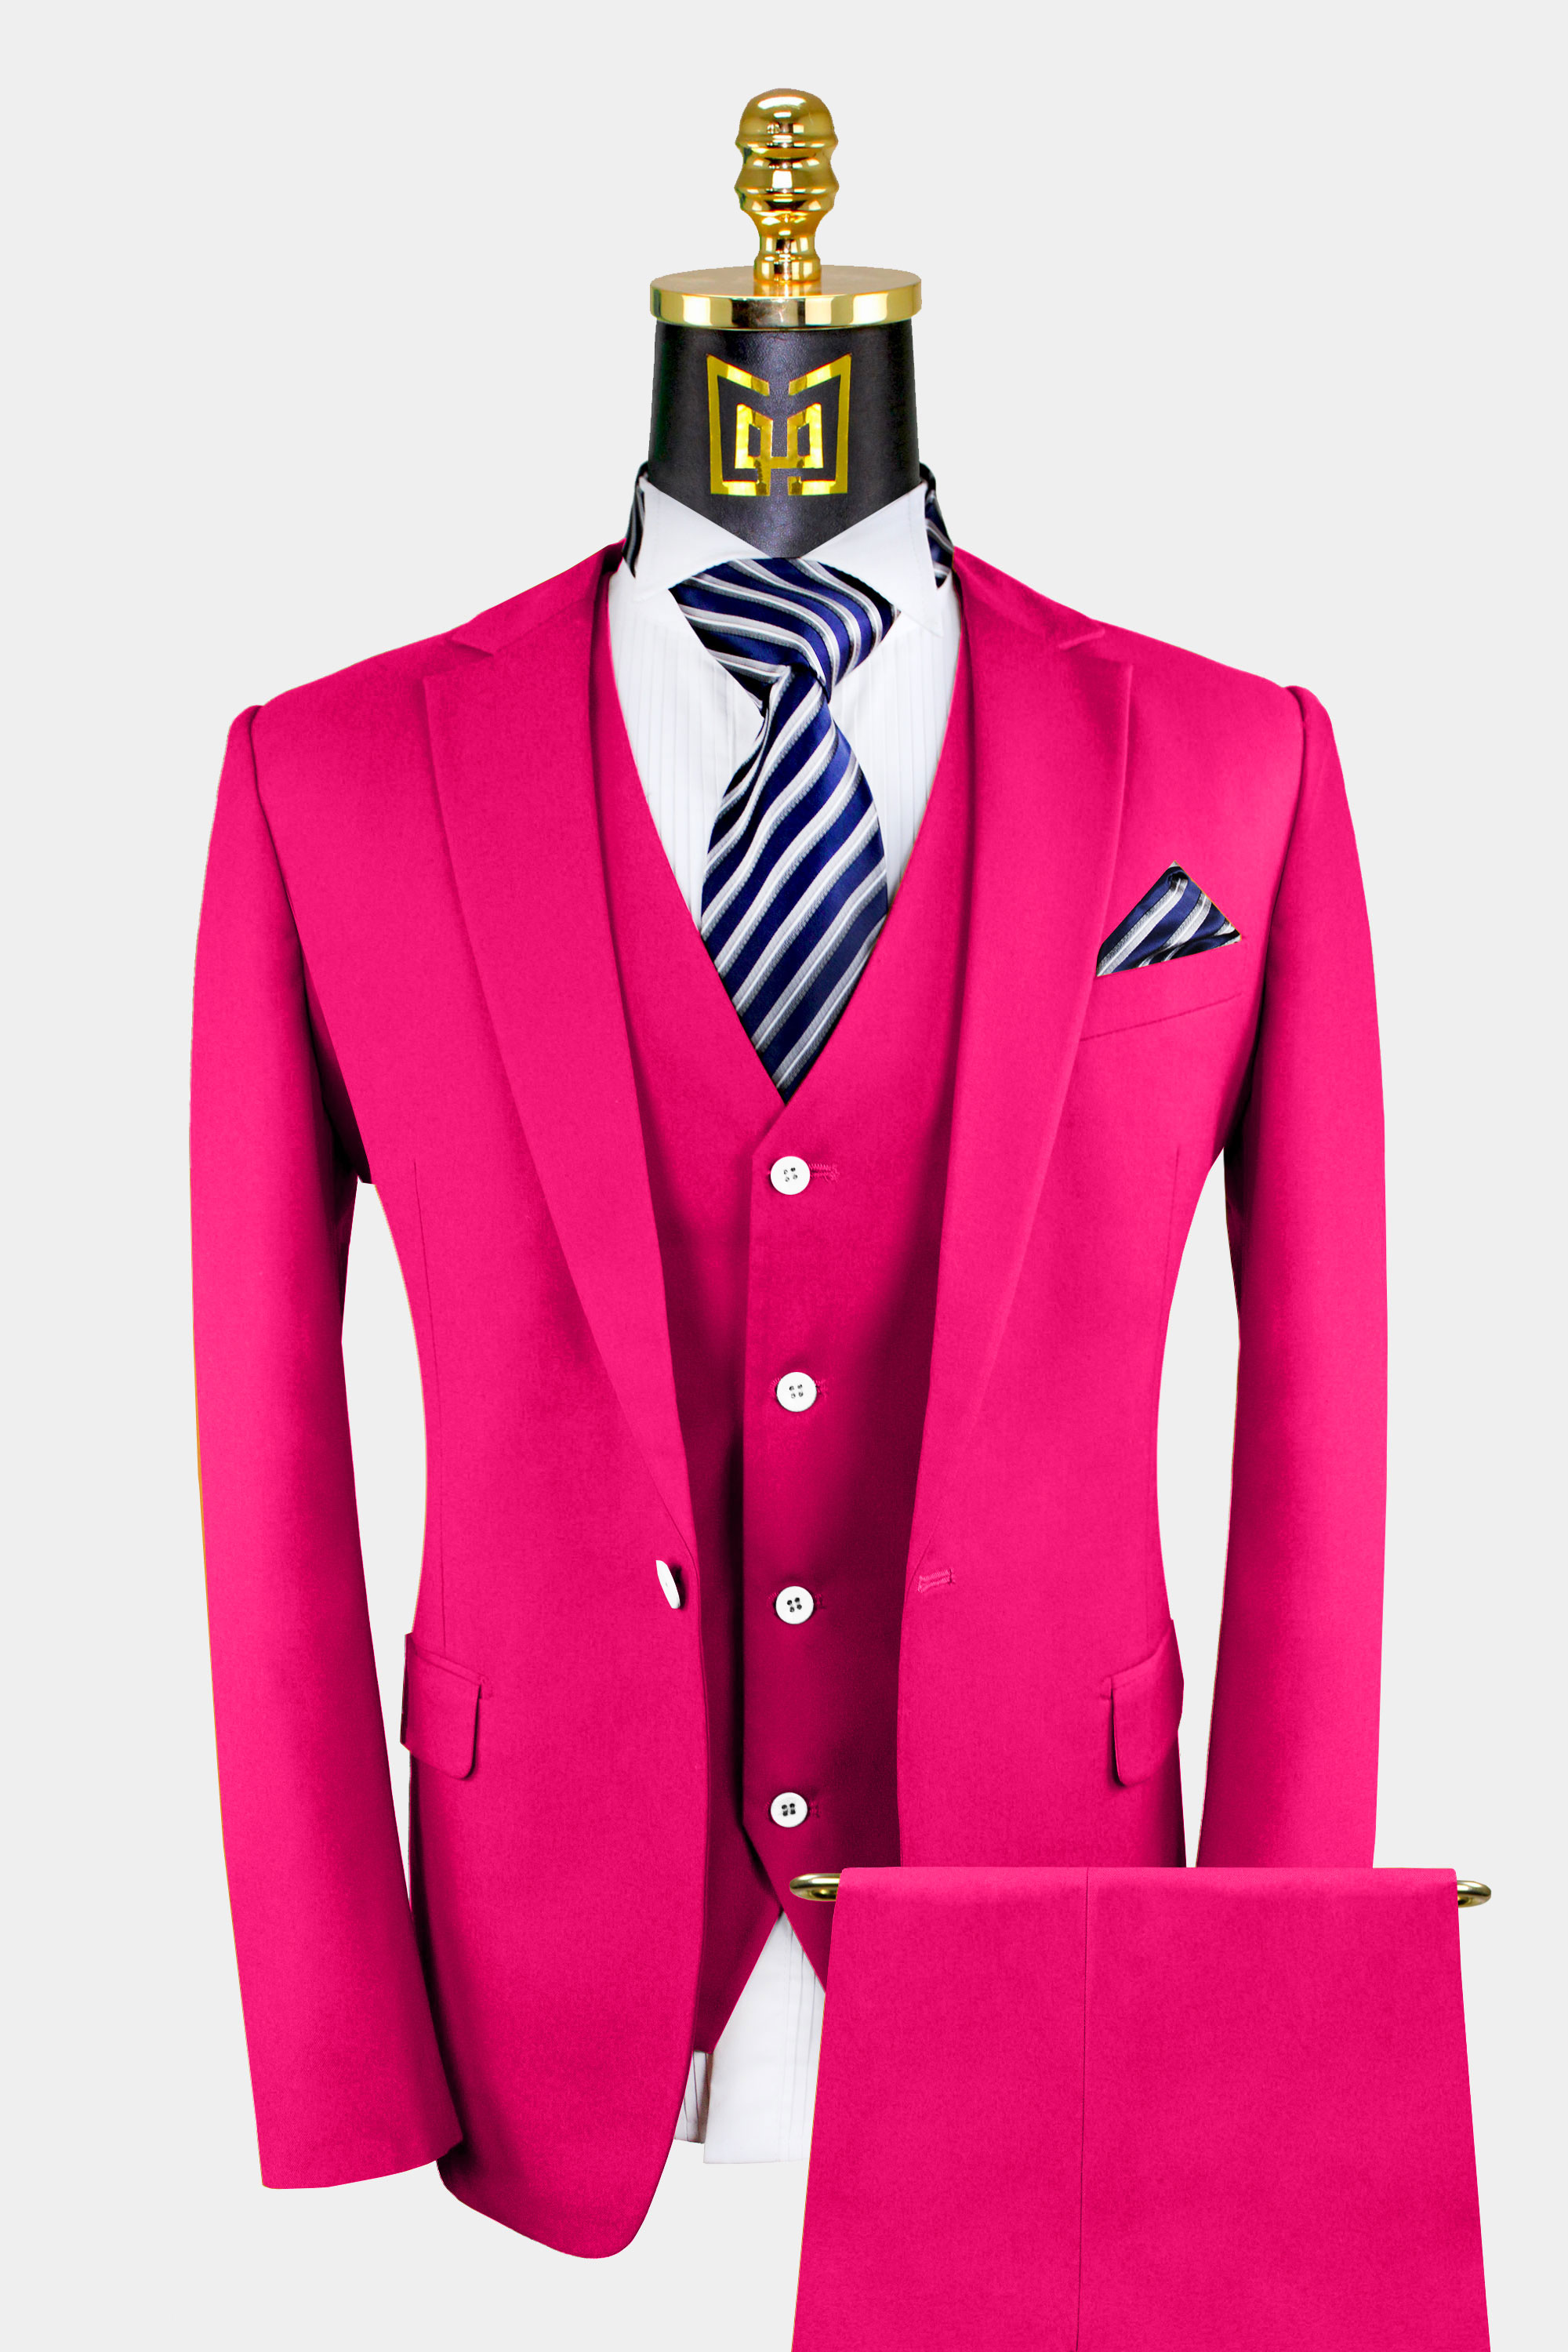 Men's Hot Pink Suit - 3 Piece